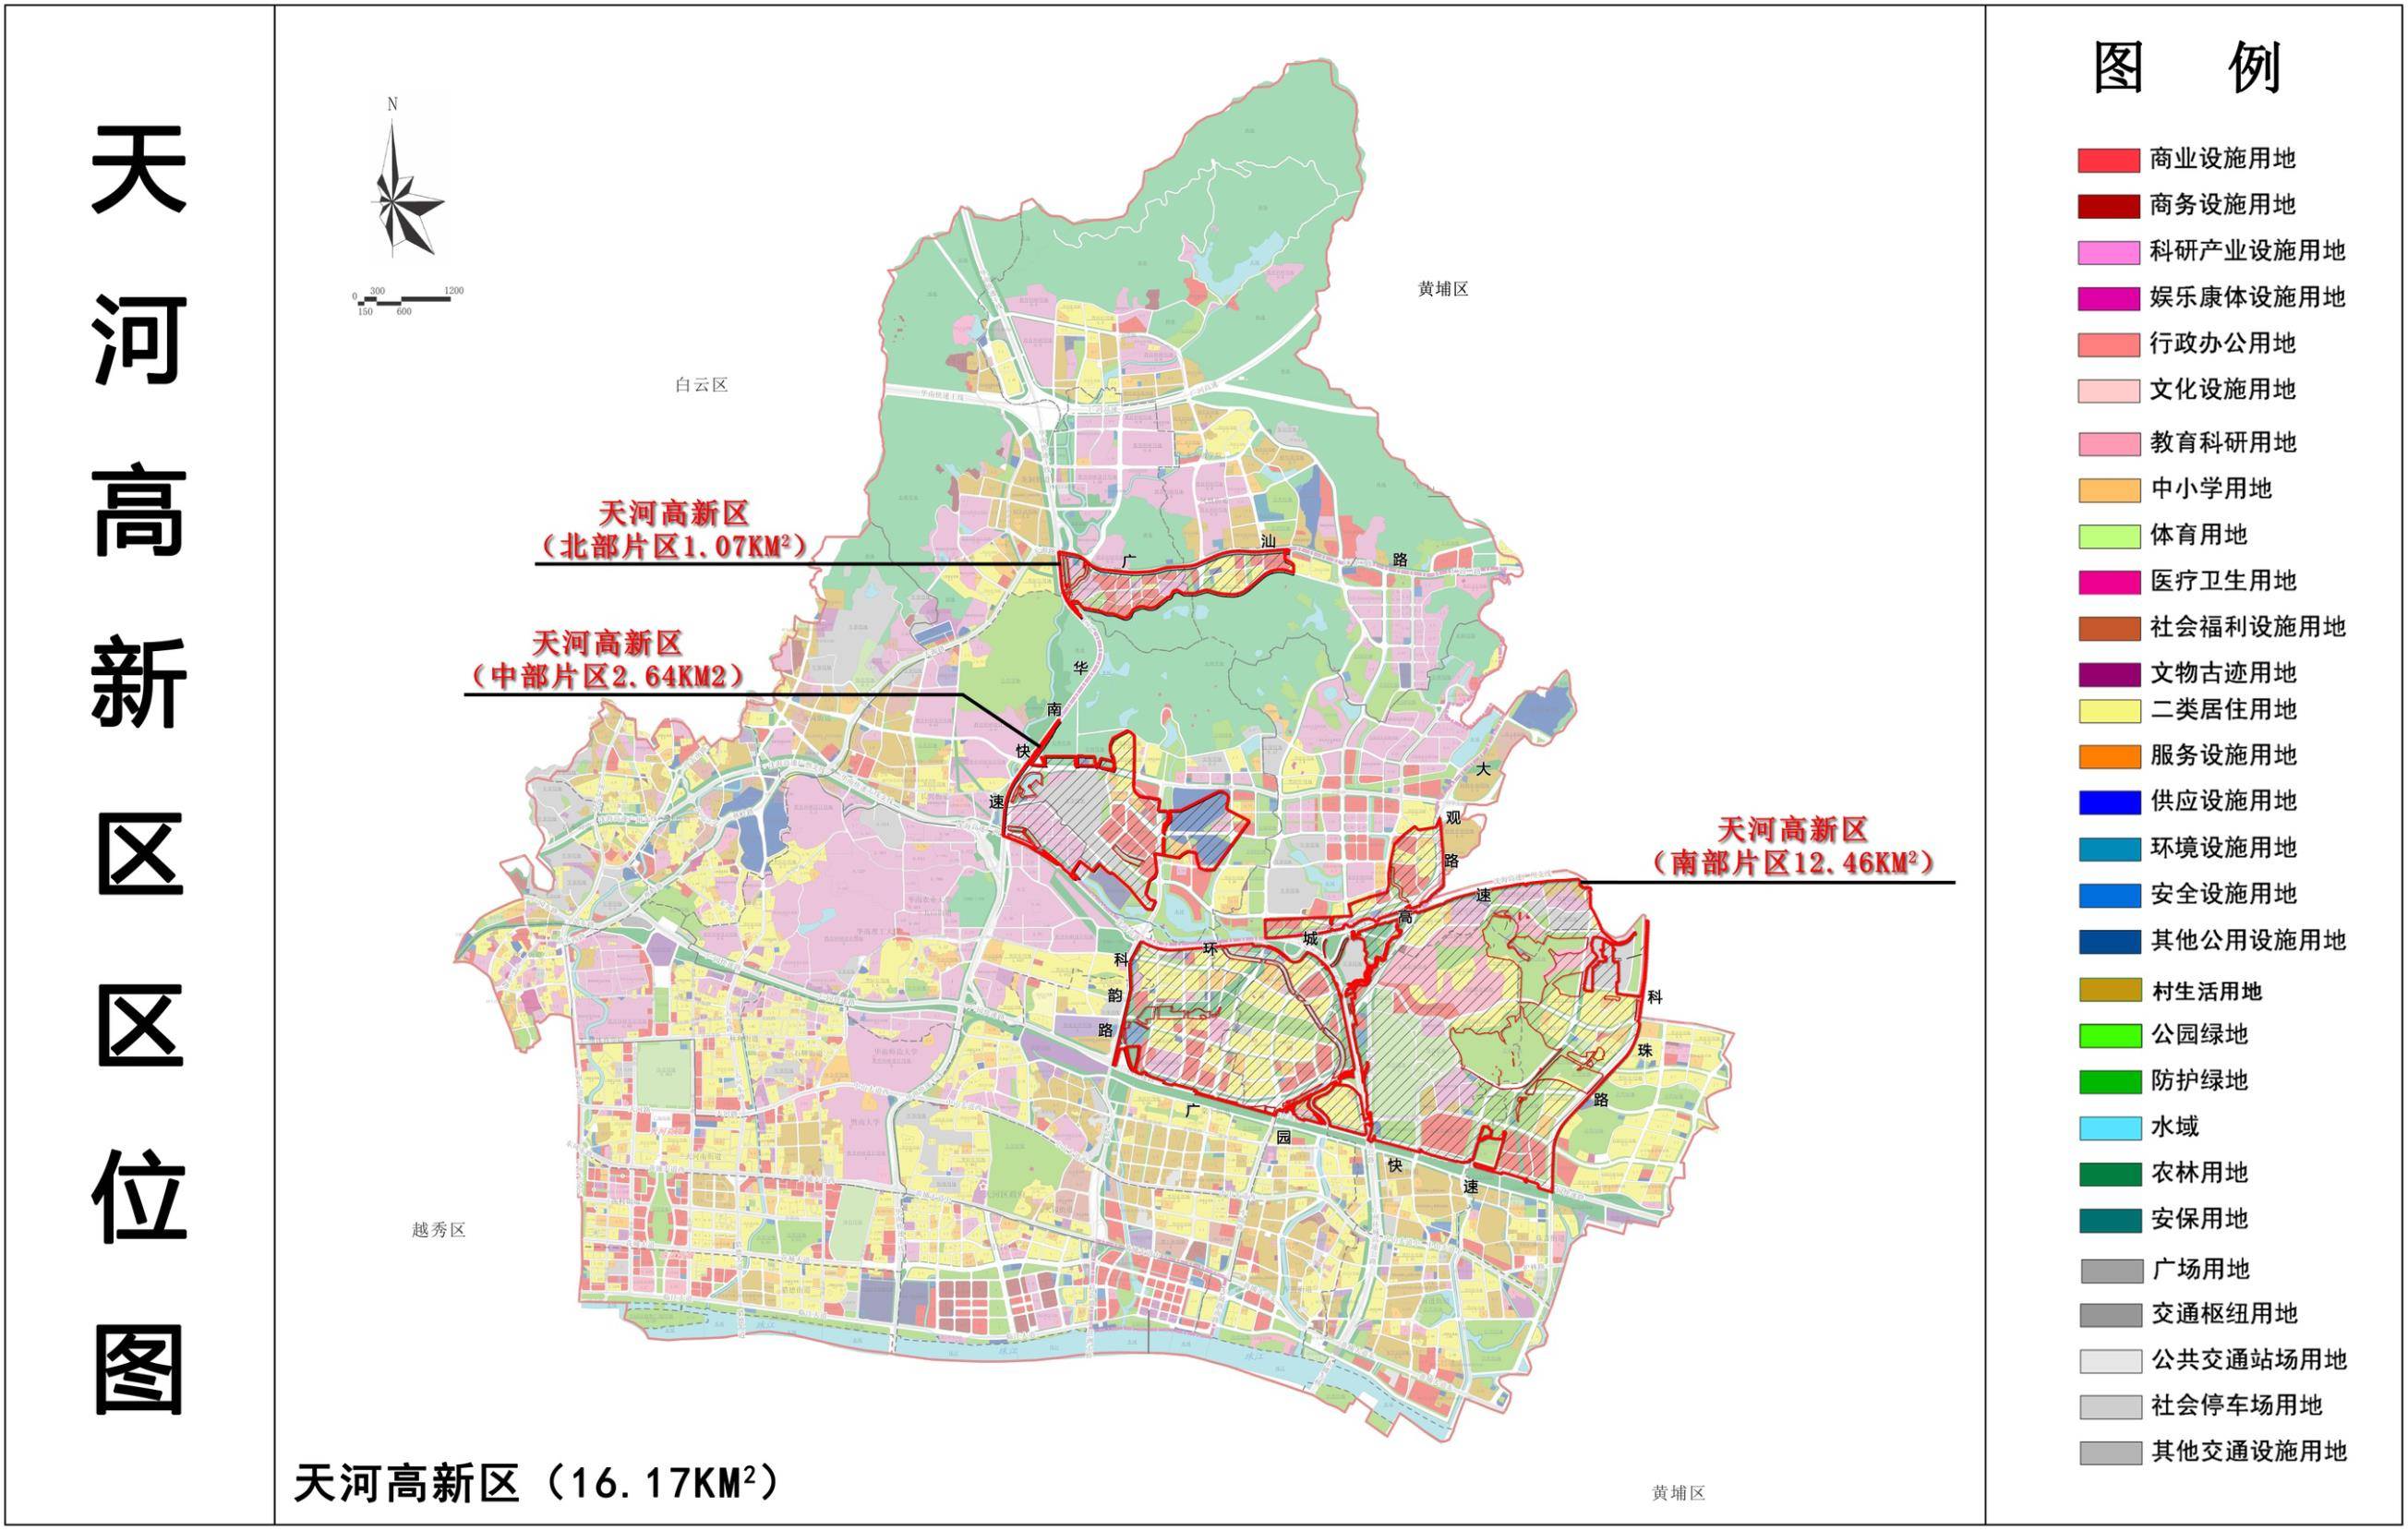 广州天河高新区正式揭牌,20个重点项目为"科技新城"建设提速